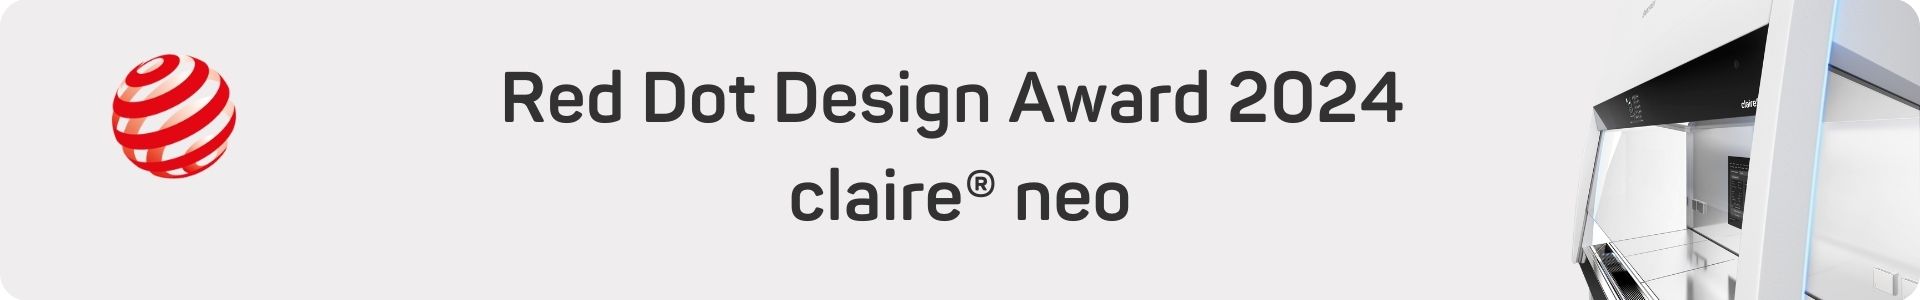 Red Dot Design Award Winner 2024